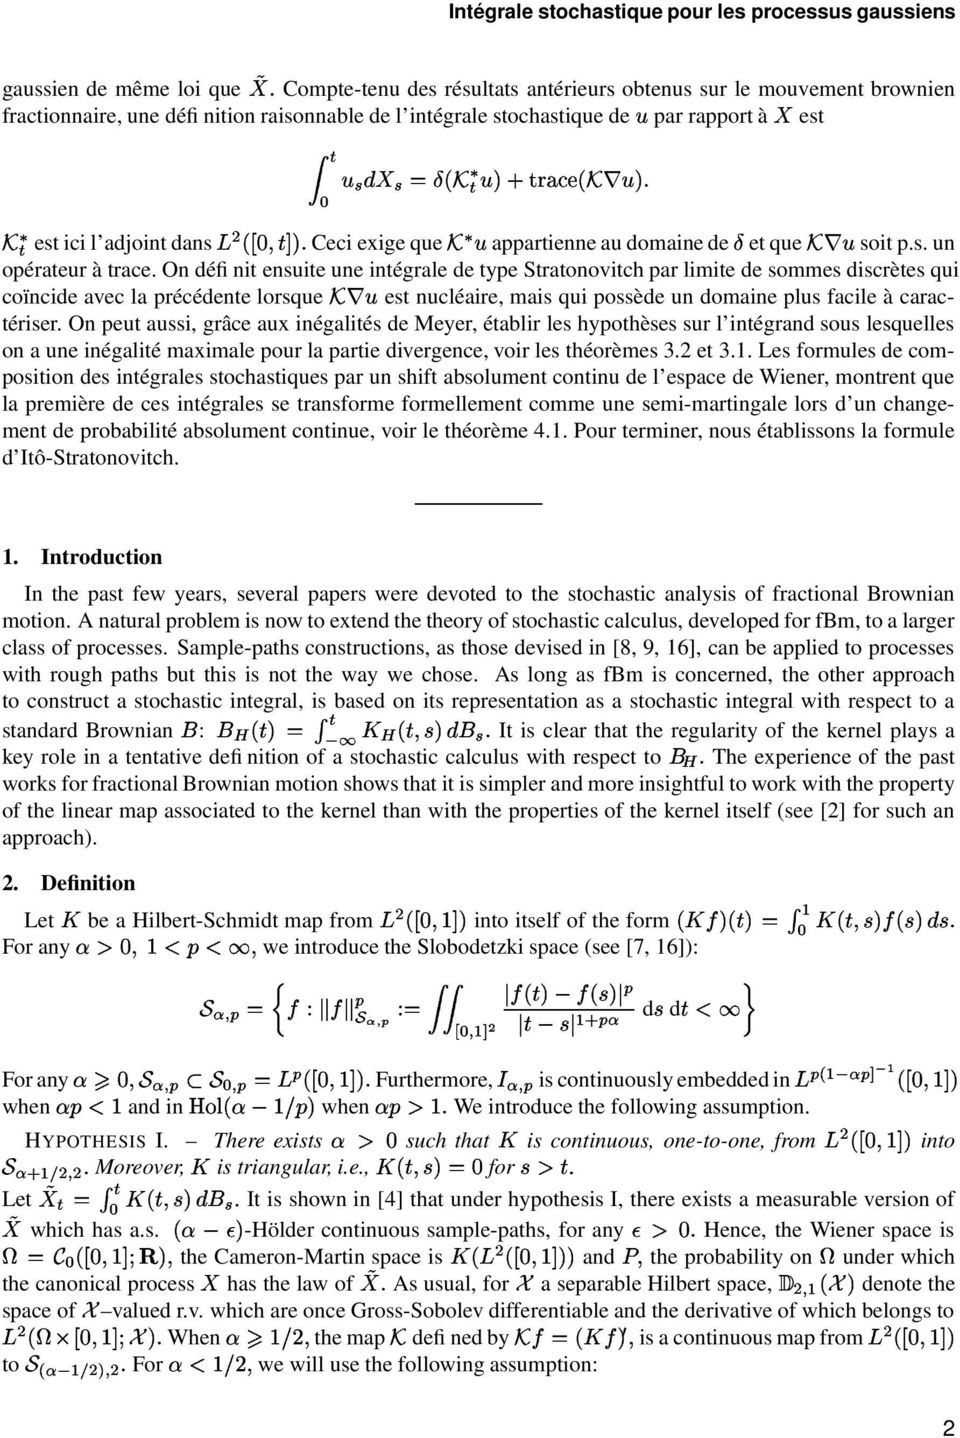 n définit ensuite une intégrale de type tratonovitch par limite de sommes discrètes qui coïncide avec la précédente lorsque est nucléaire, mais qui possède un domaine plus facile à caractériser.